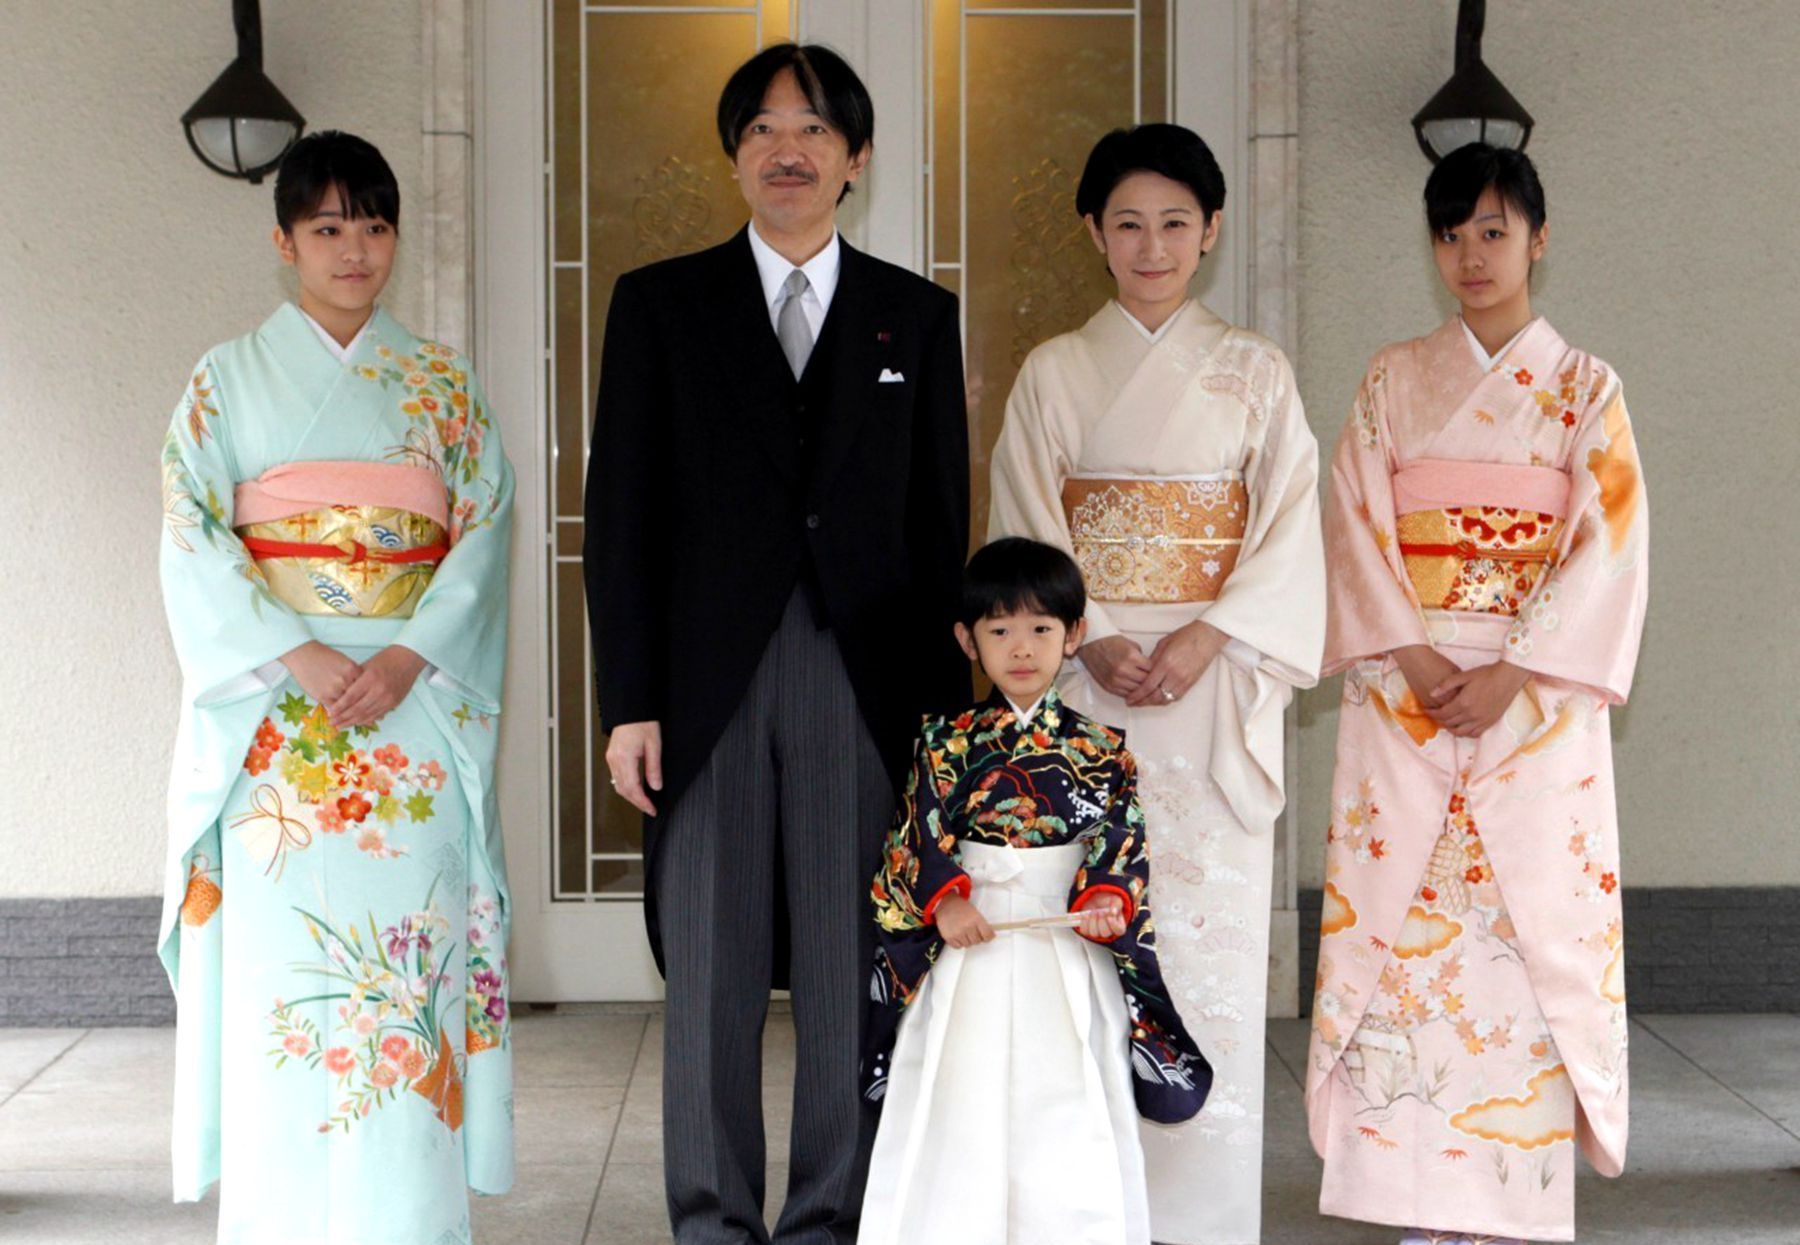 为什么日本人盛行兄妹结婚?中国却禁止近亲结婚